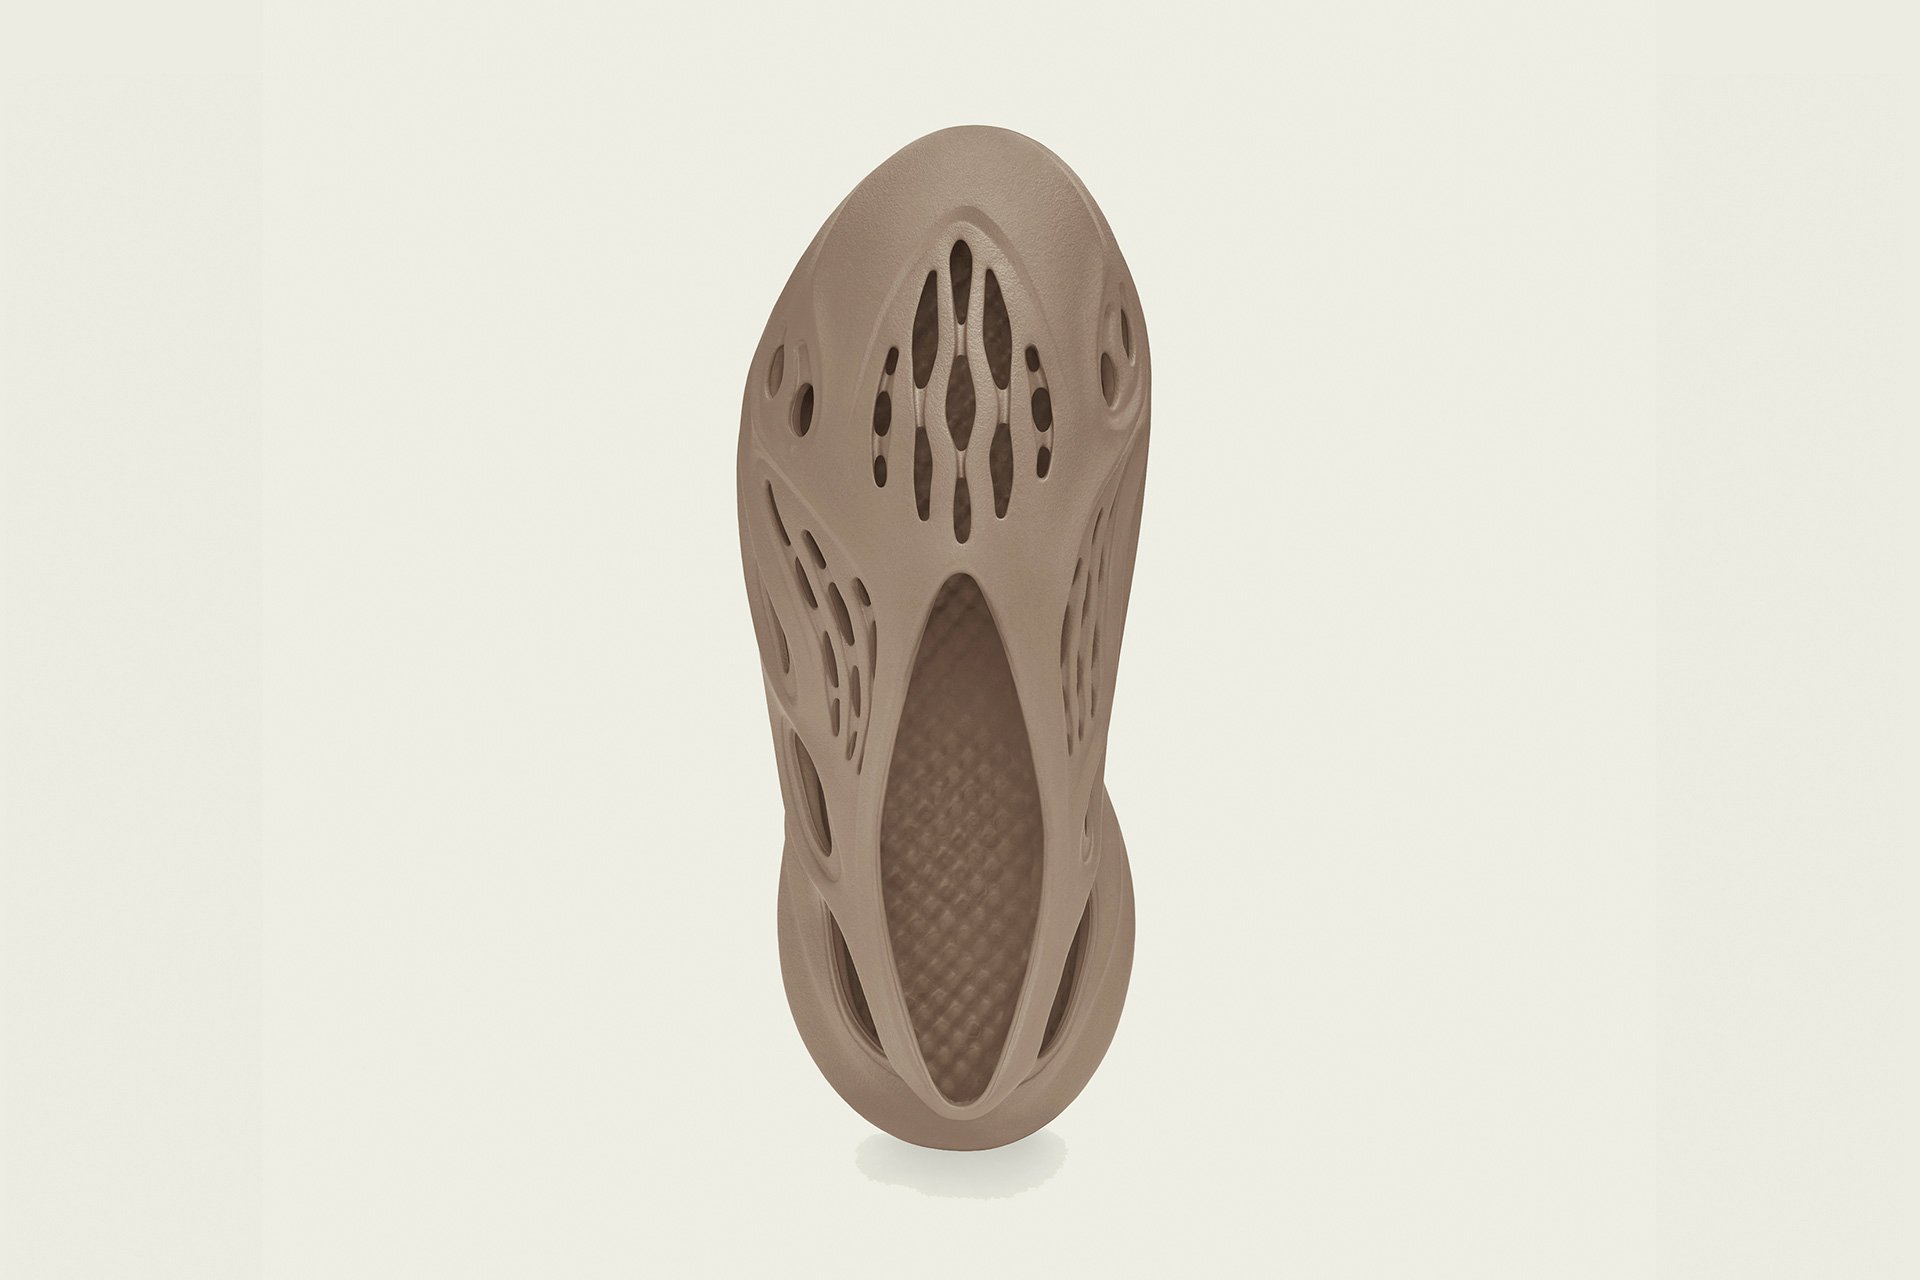 adidas Yeezy Foam Runner, Mist - Footshop - Releases